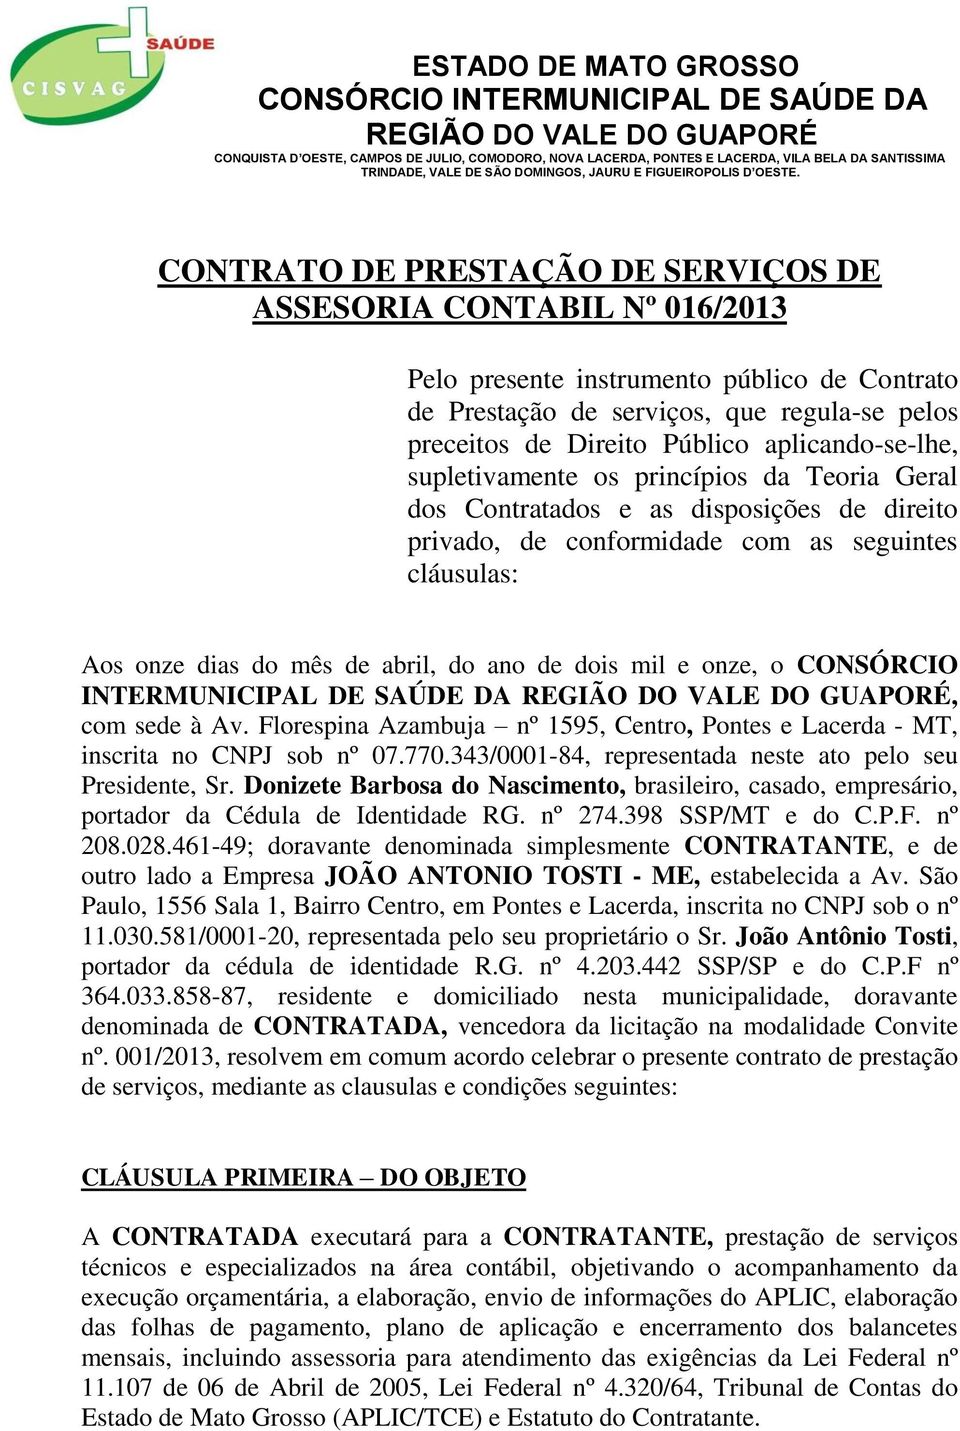 de dois mil e onze, o CONSÓRCIO INTERMUNICIPAL DE SAÚDE DA, com sede à Av. Florespina Azambuja nº 1595, Centro, Pontes e Lacerda - MT, inscrita no CNPJ sob nº 07.770.